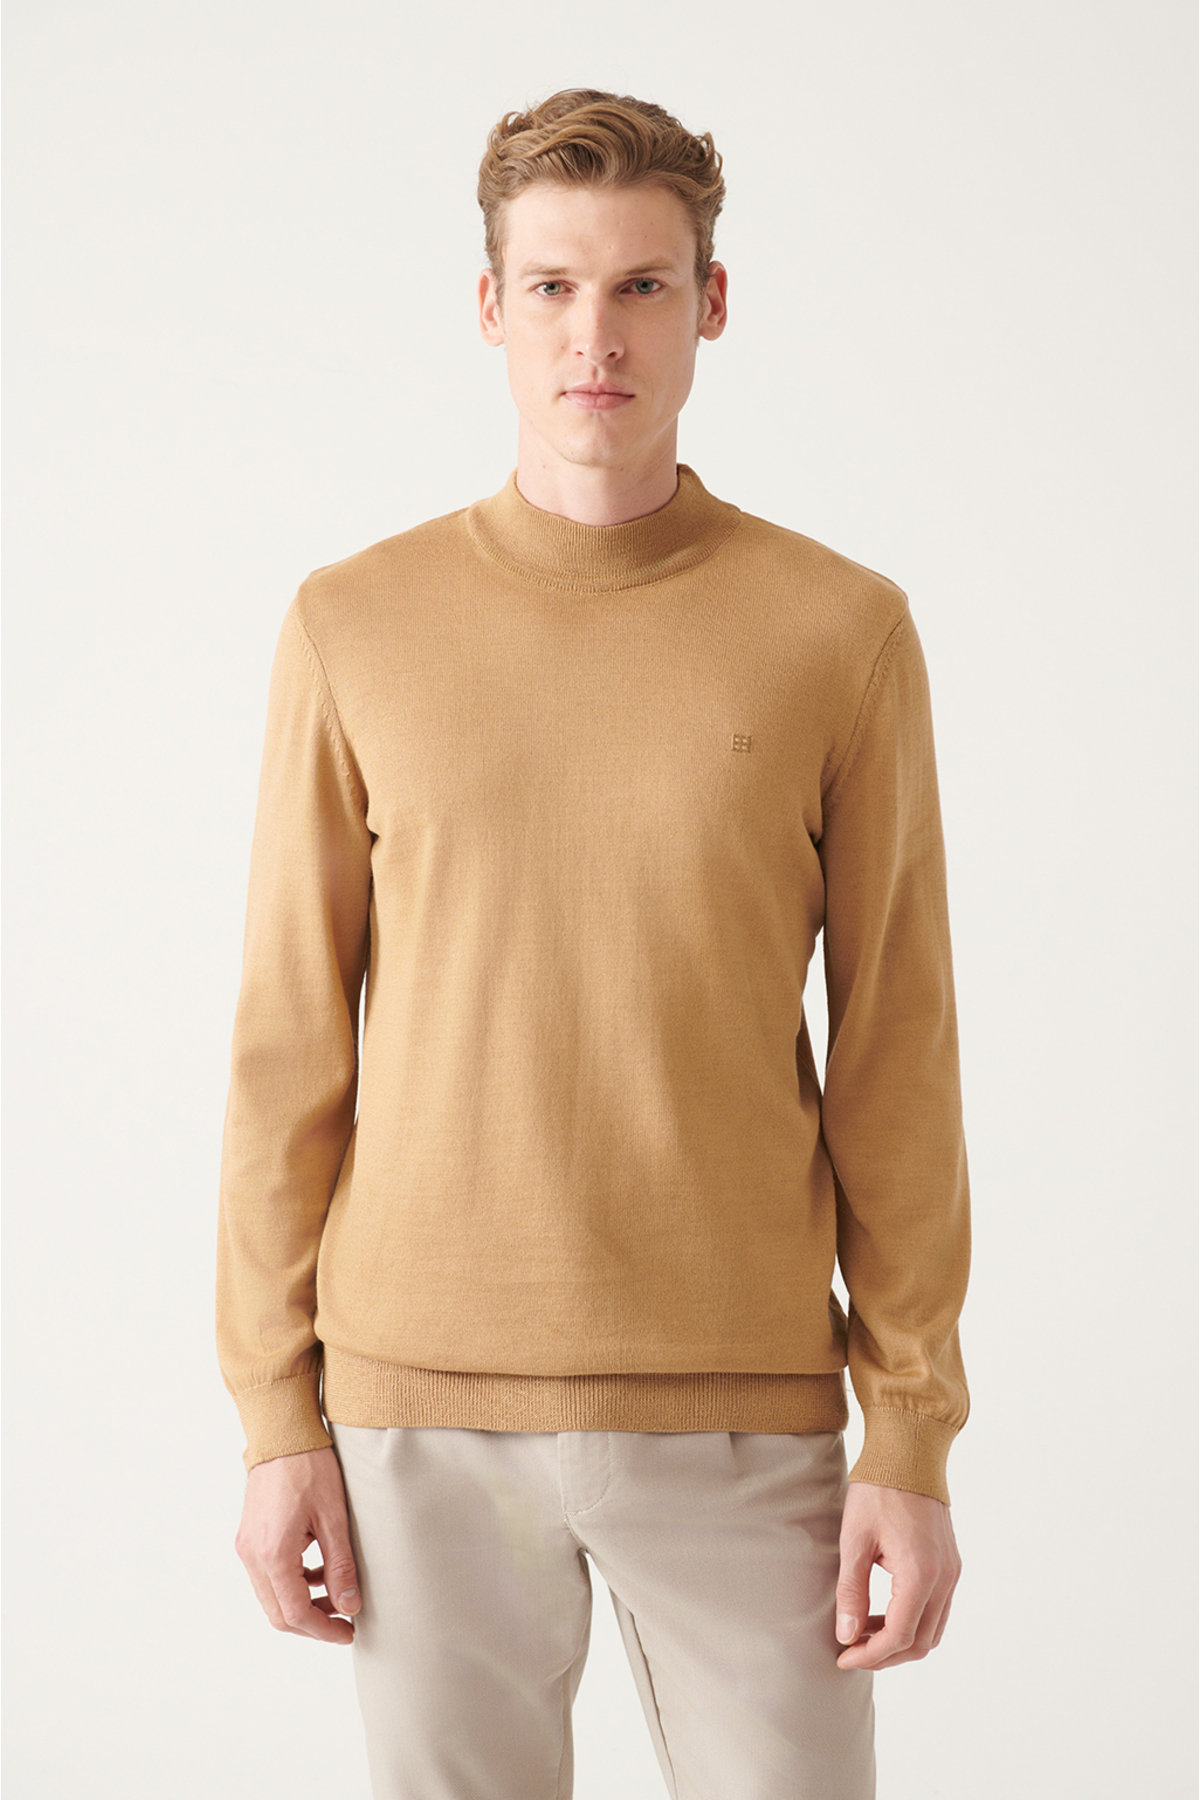 Levně Avva Men's Beige Half Turtleneck Wool Blended Regular Fit Knitwear Sweater